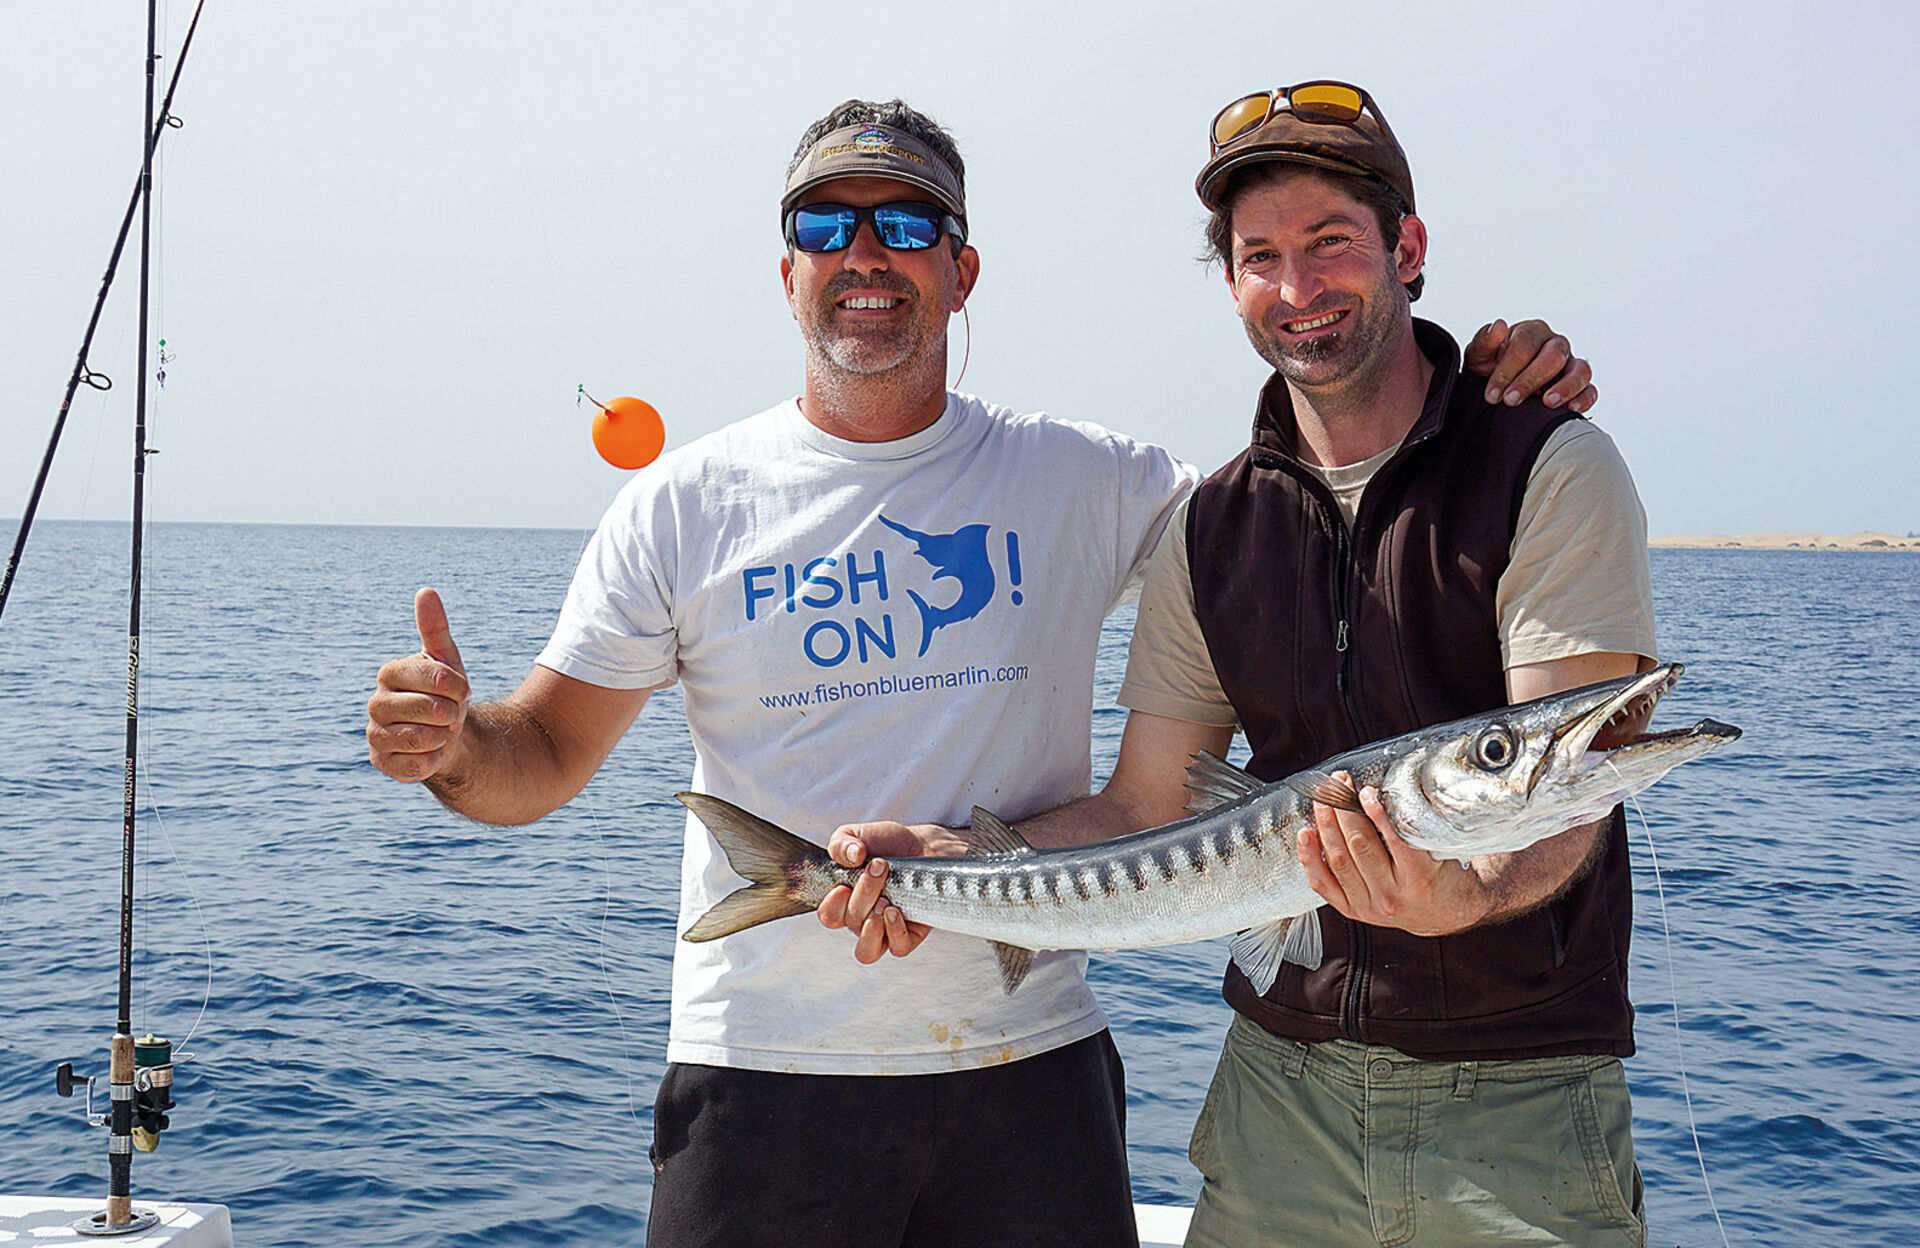  Pedro Betancor bietet Fischerausfahrten auf dem Meer an und schätzt es, seine Gäste glücklich zu machen. Dass es nicht immer die ganz grossen Fische sein müssen, kann er aus Erfahrung nur bestätigen.   